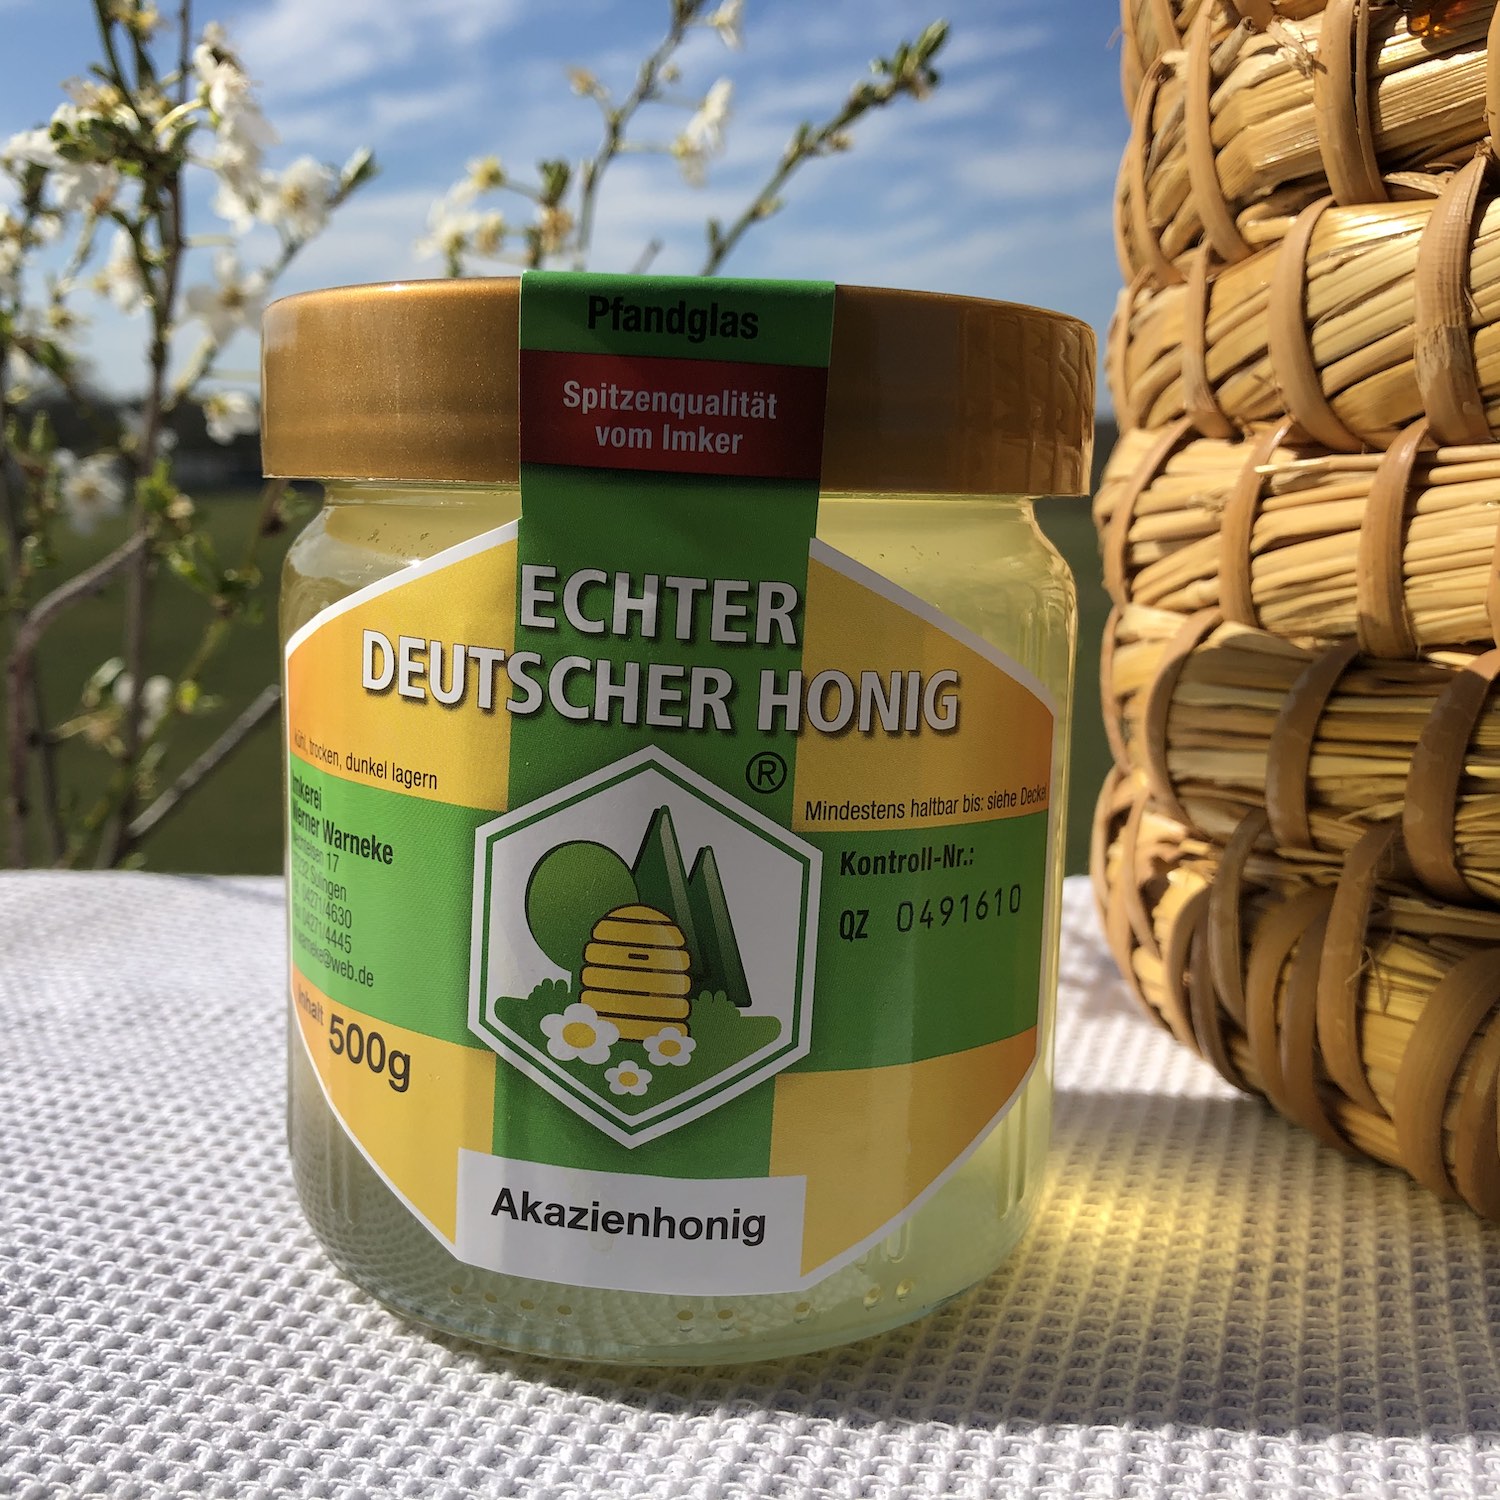 500g Glas Echter Deutscher Honig Akazienhonig